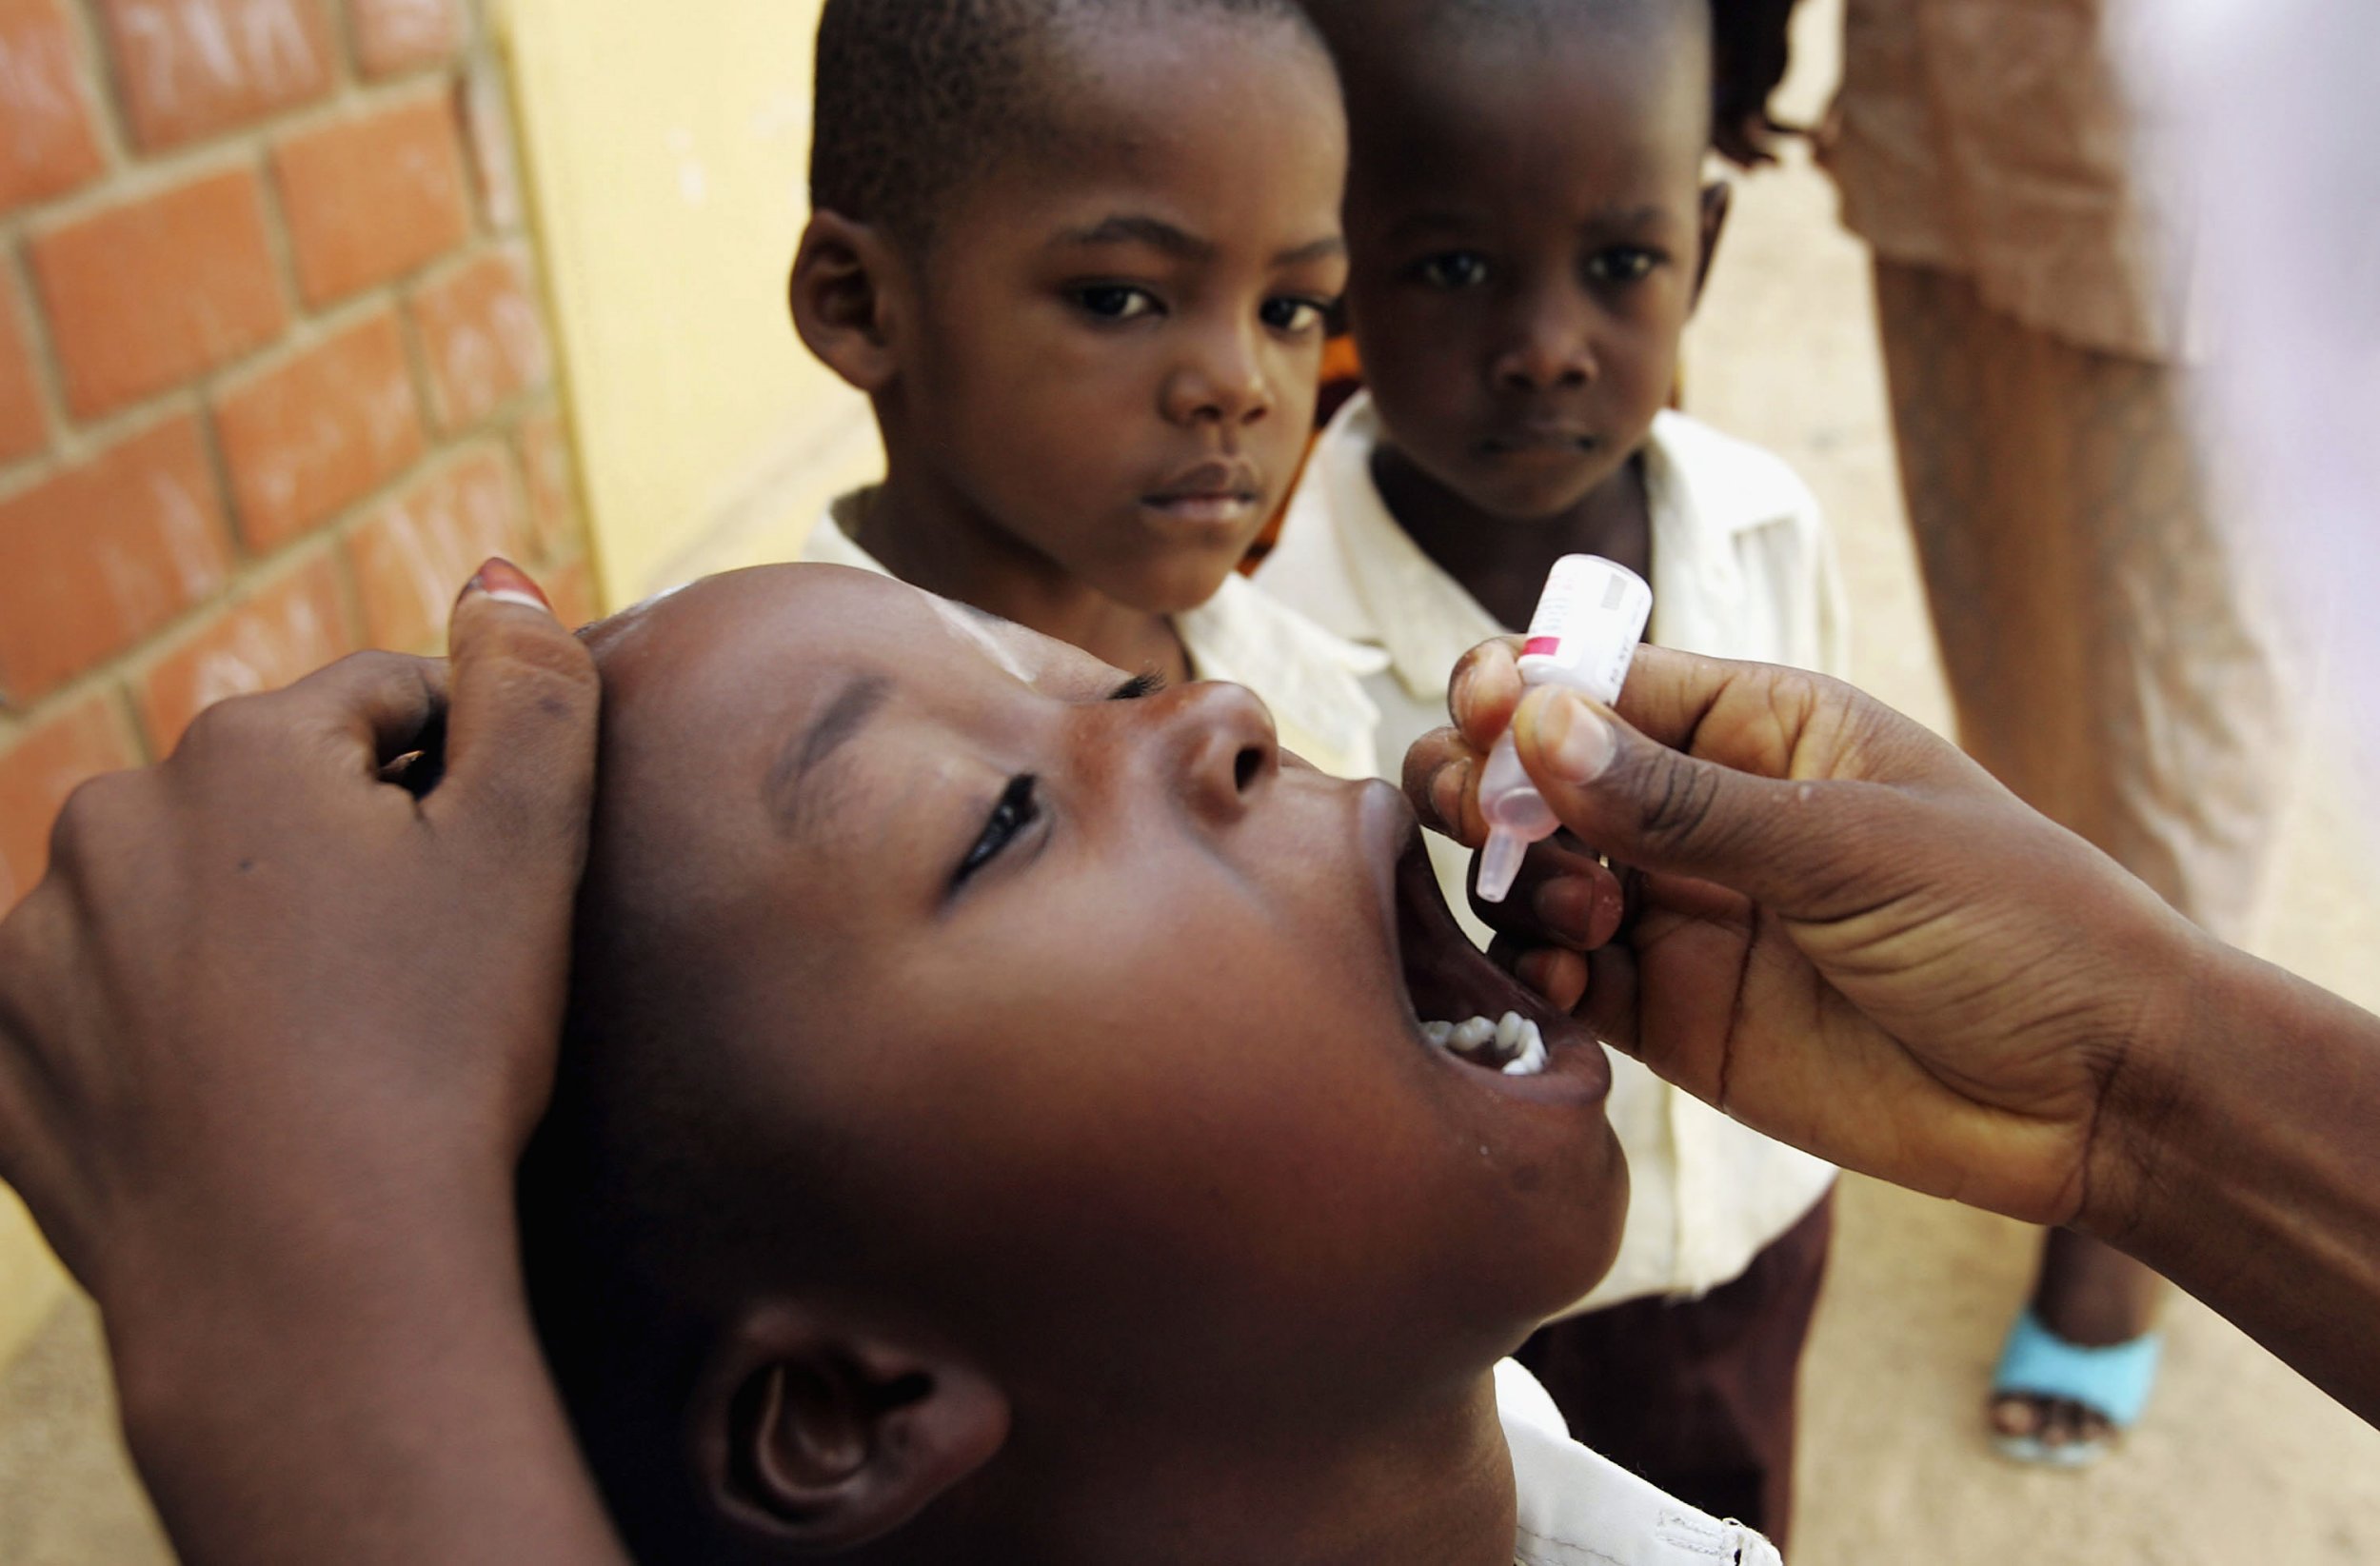 Nigeria polio vaccine